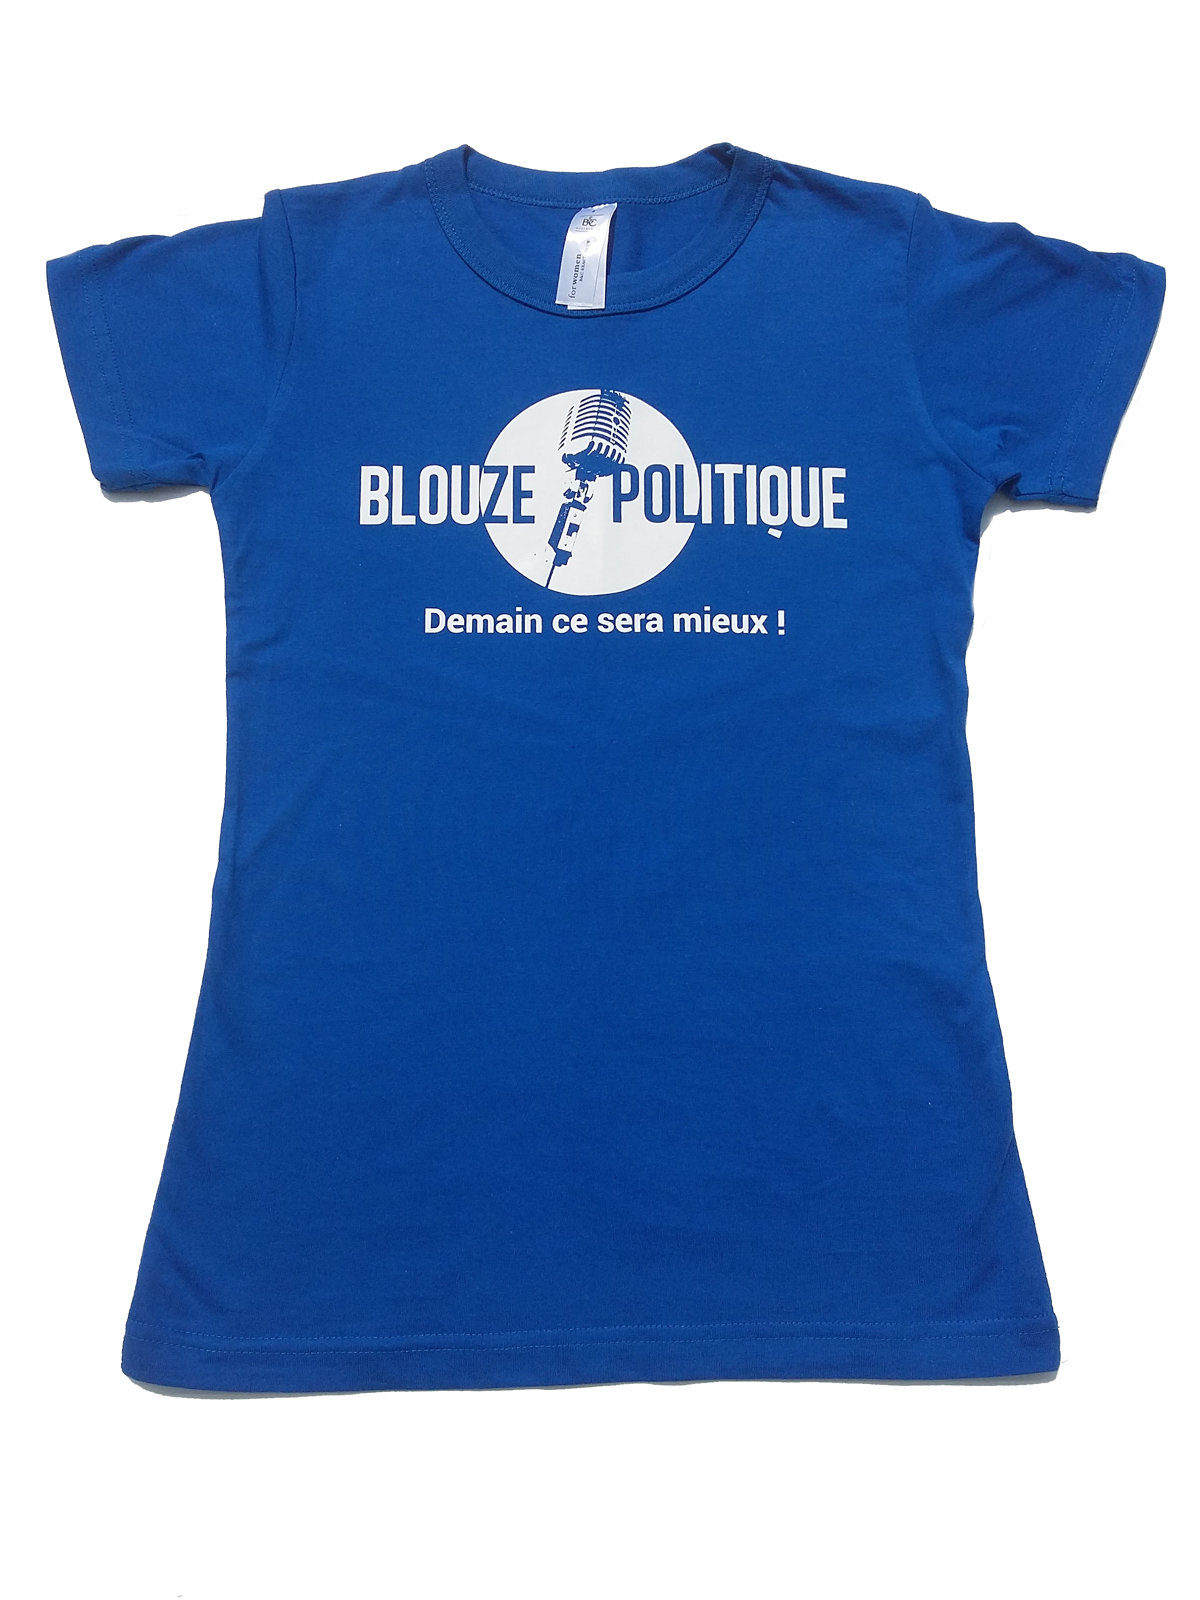 Tee-shirt Blouze Politique, modèle femme